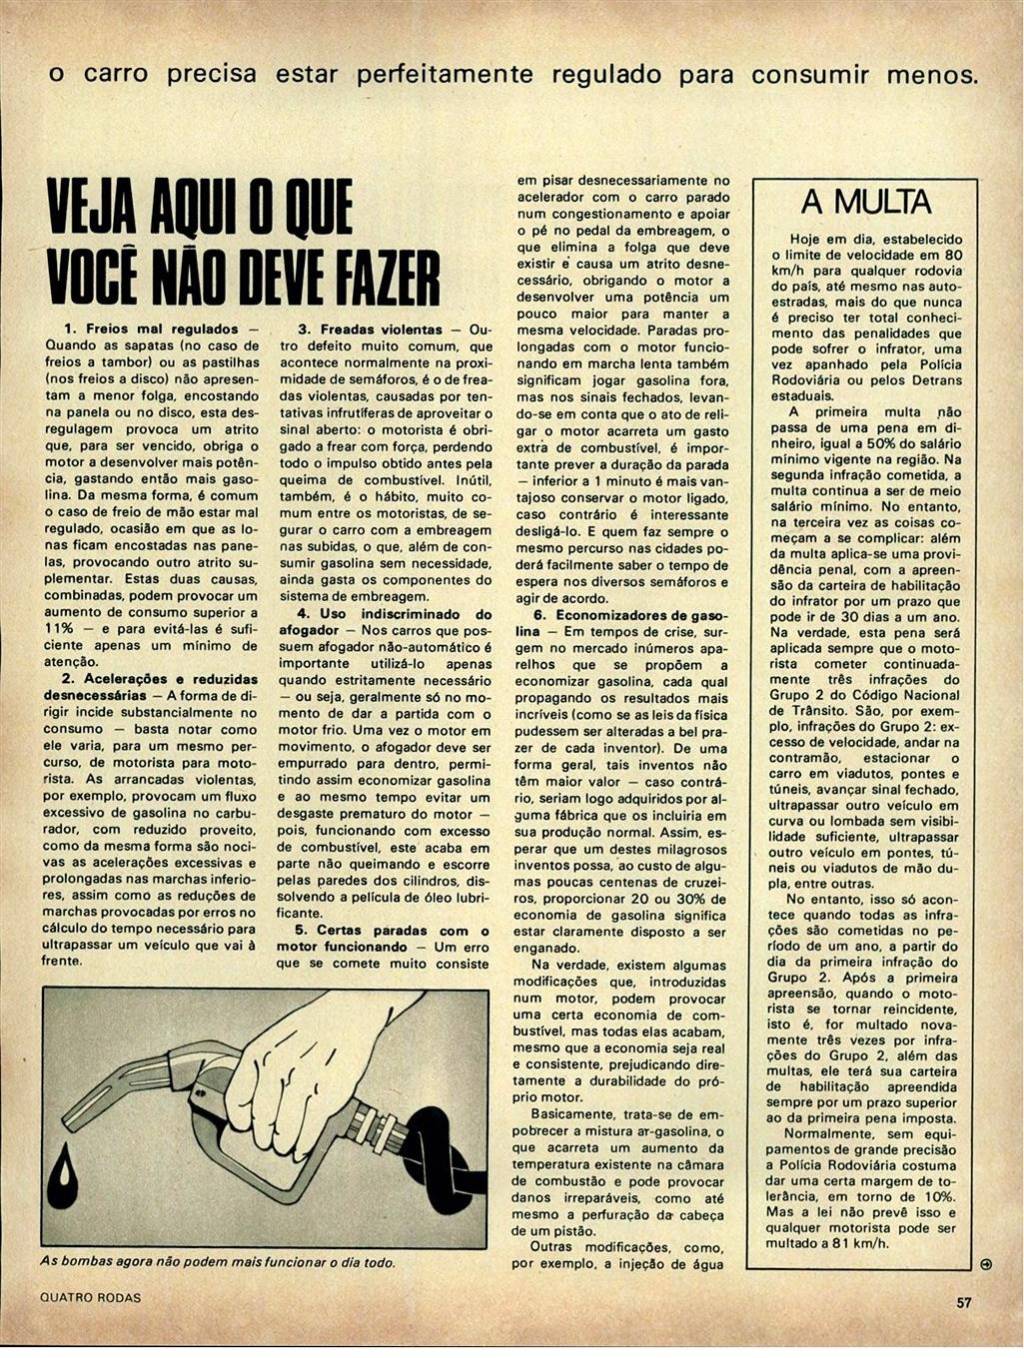 Quatro Rodas 1977 ed-0199_pag-057